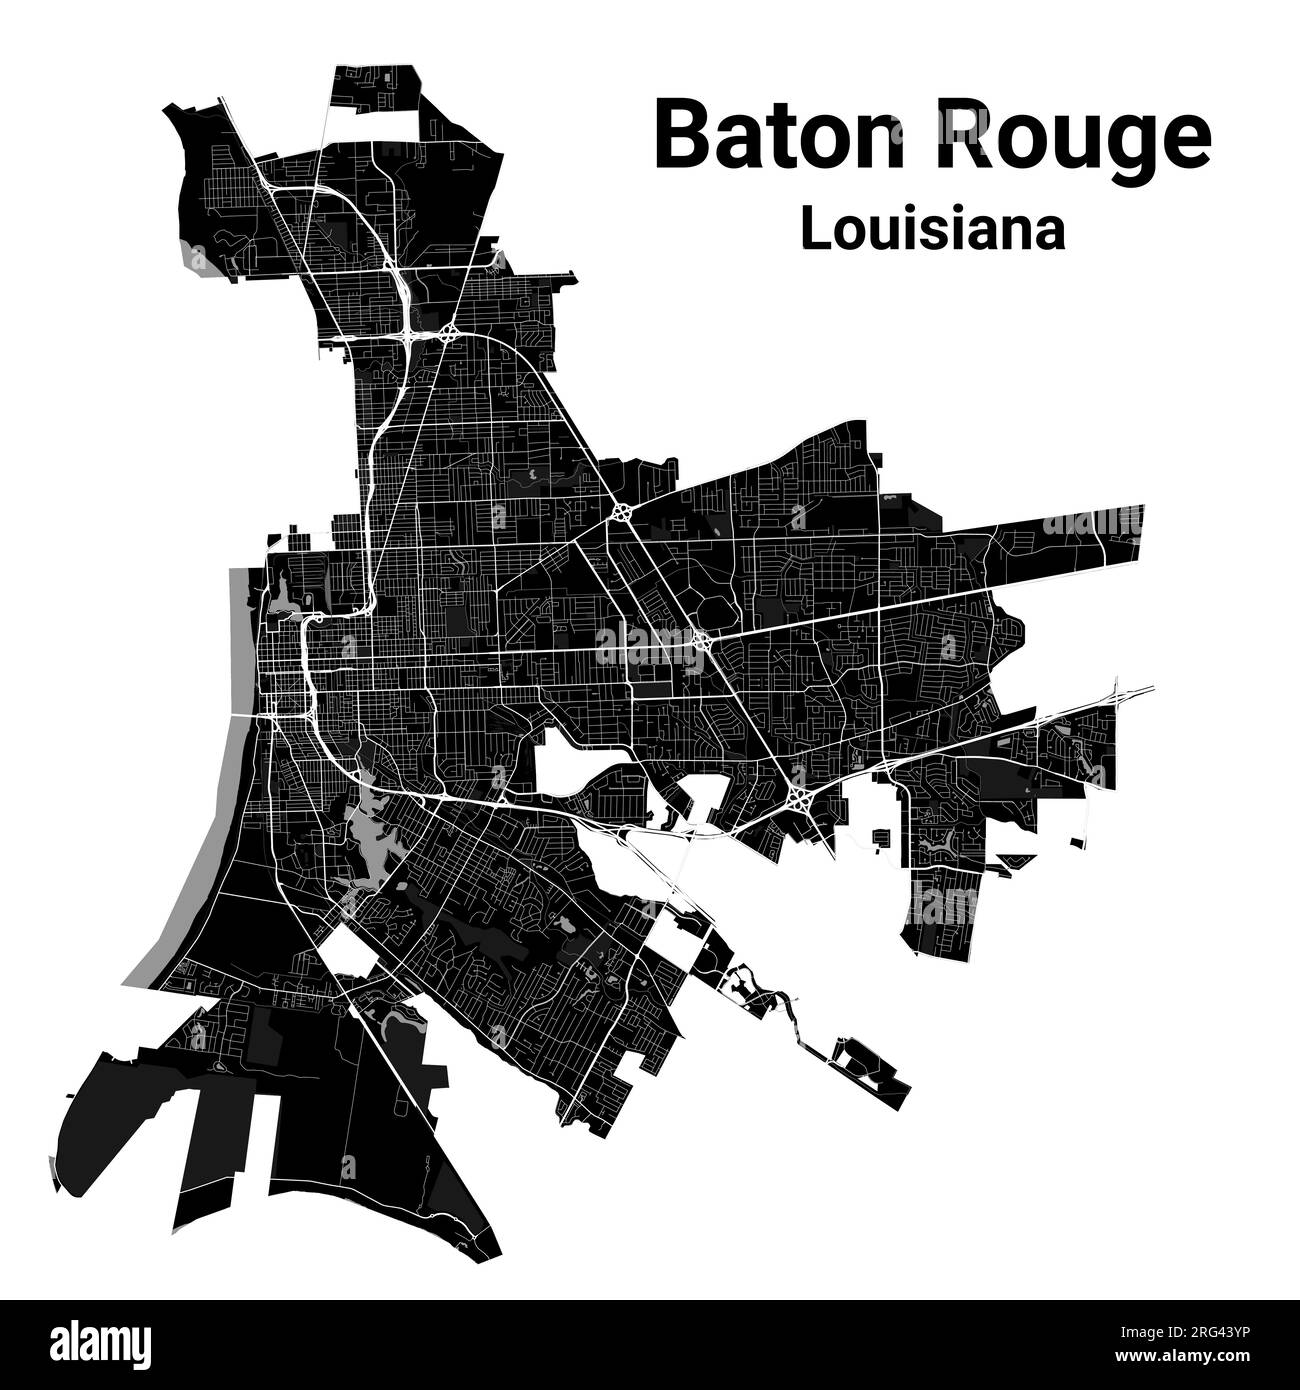 Mappa della città di Baton Rouge, capitale dello stato della Louisiana degli Stati Uniti. Confini amministrativi comunali, mappa dell'area in bianco e nero con fiumi e strade, parchi a Illustrazione Vettoriale